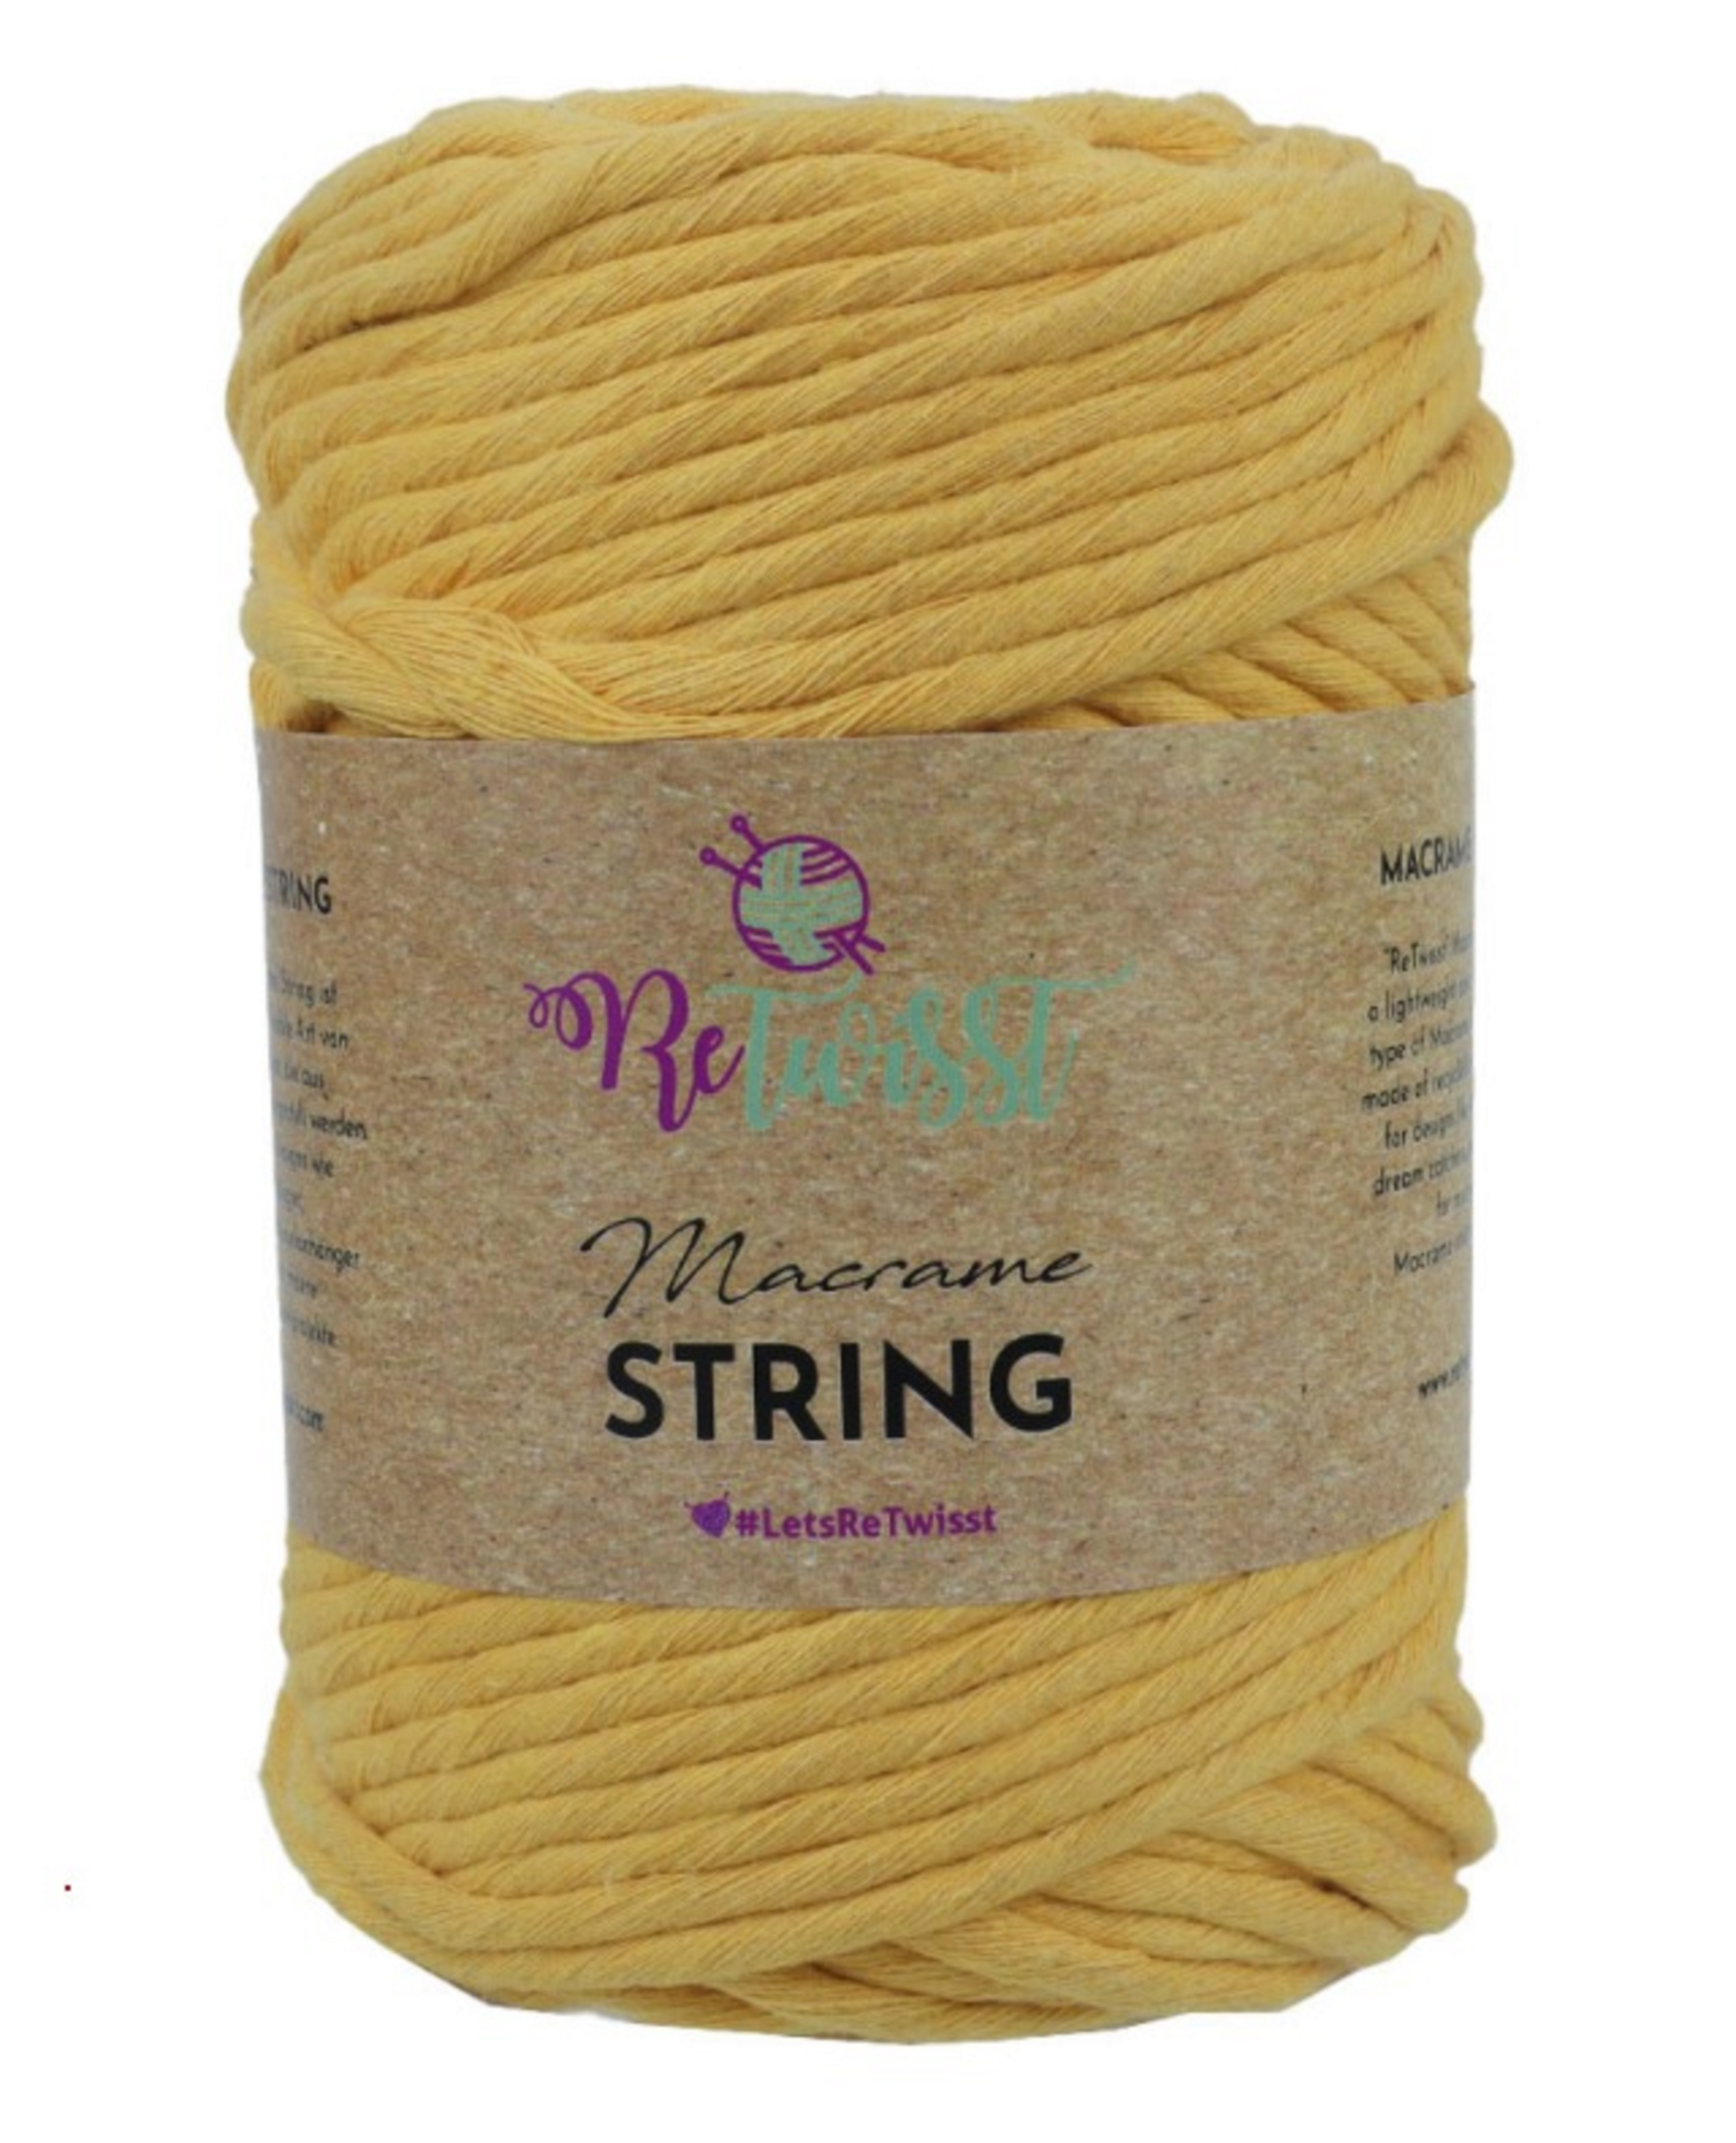 Macrame string